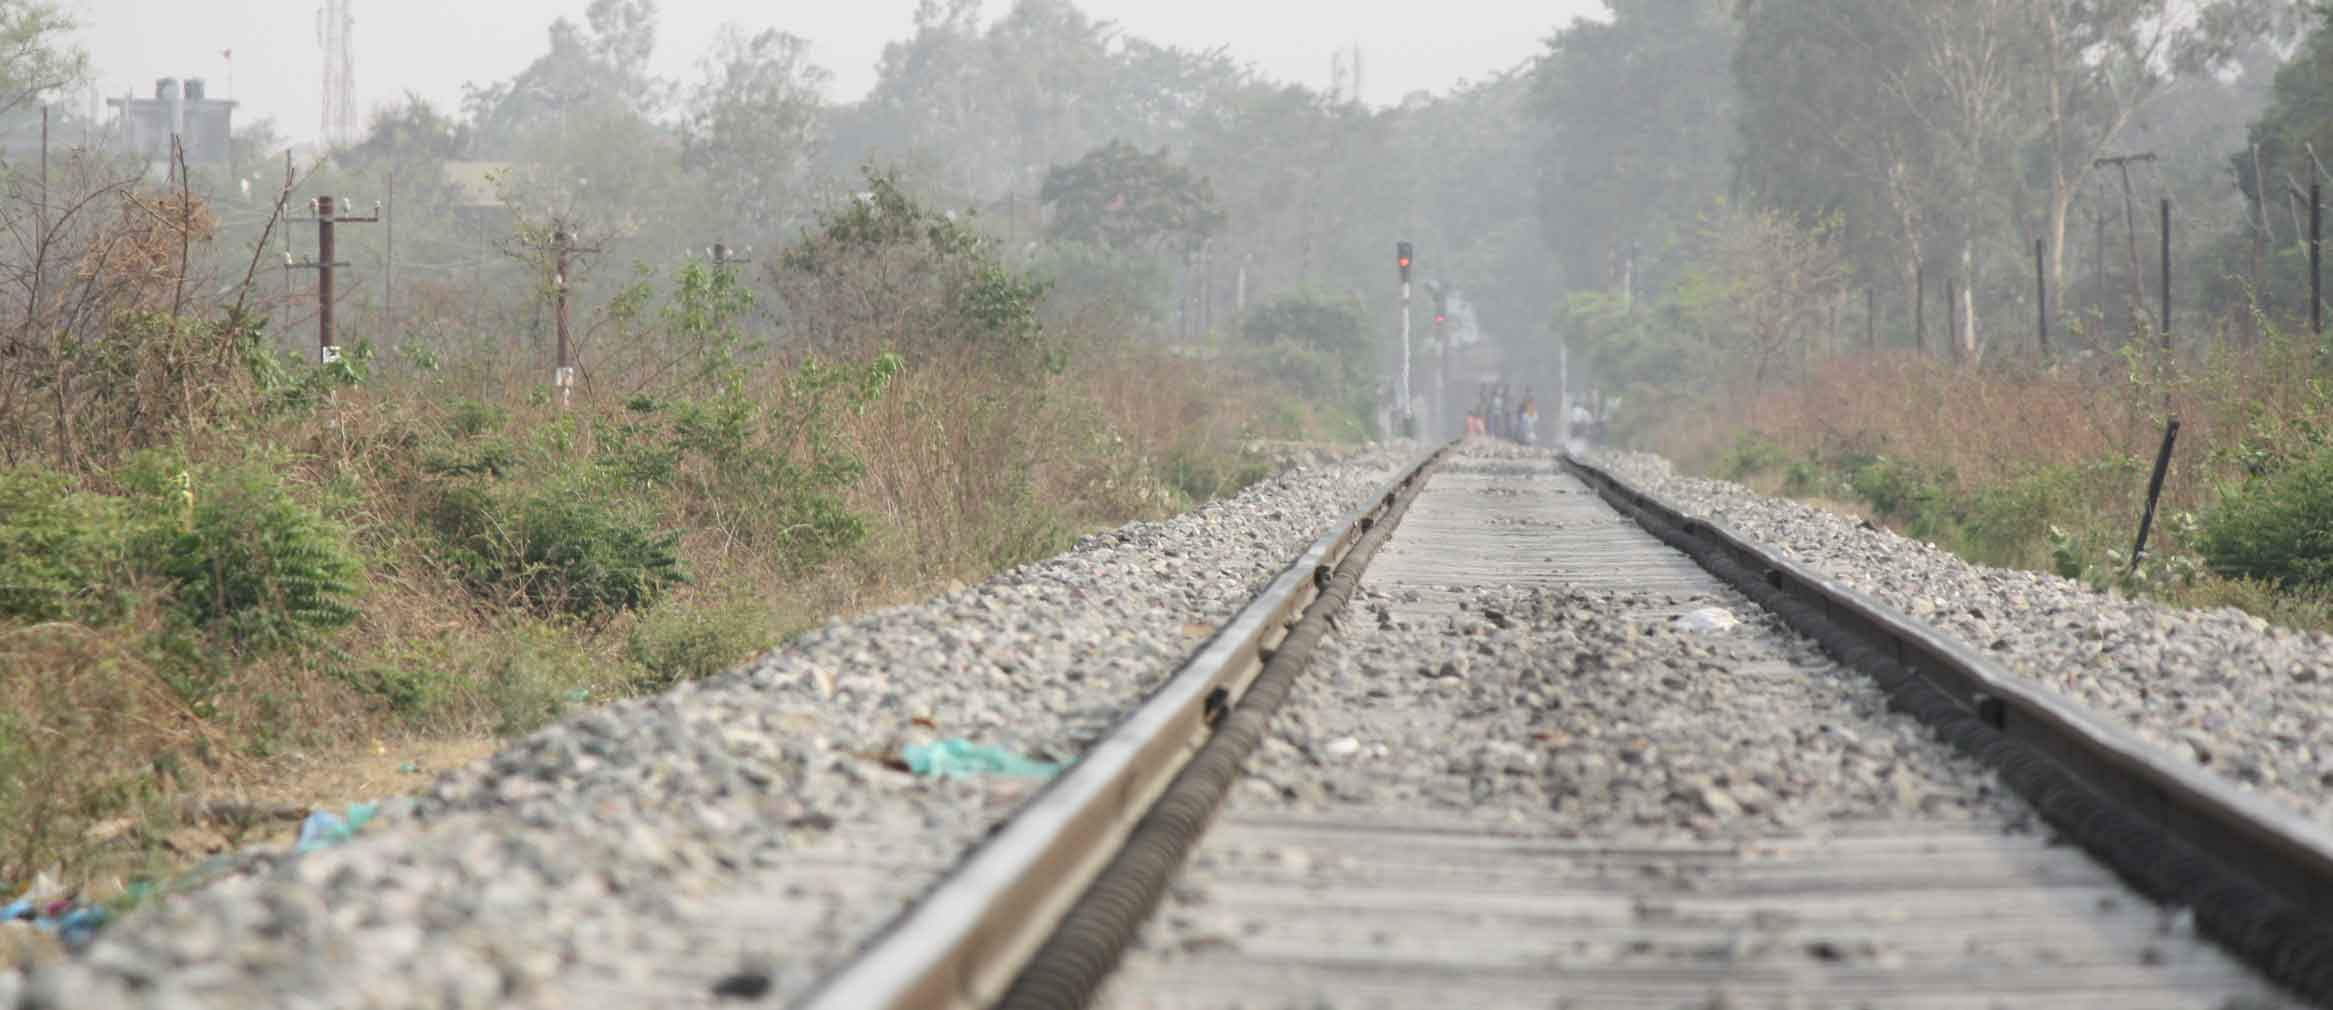 24 अप्रैल 1884 को सबसे पहले रेल पहुंची थी काठगोदाम में